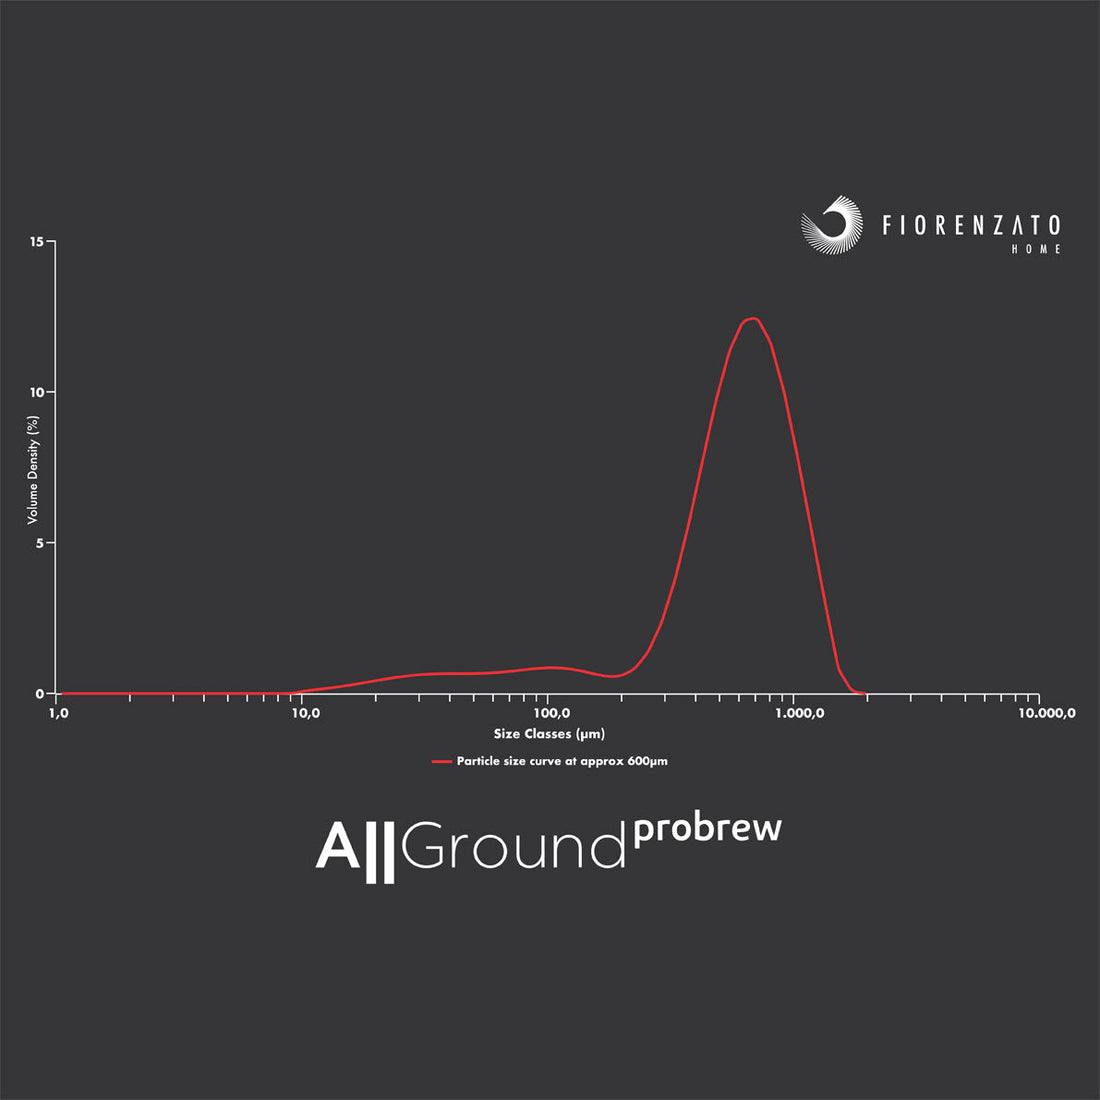 allground probrew grind size curve chart